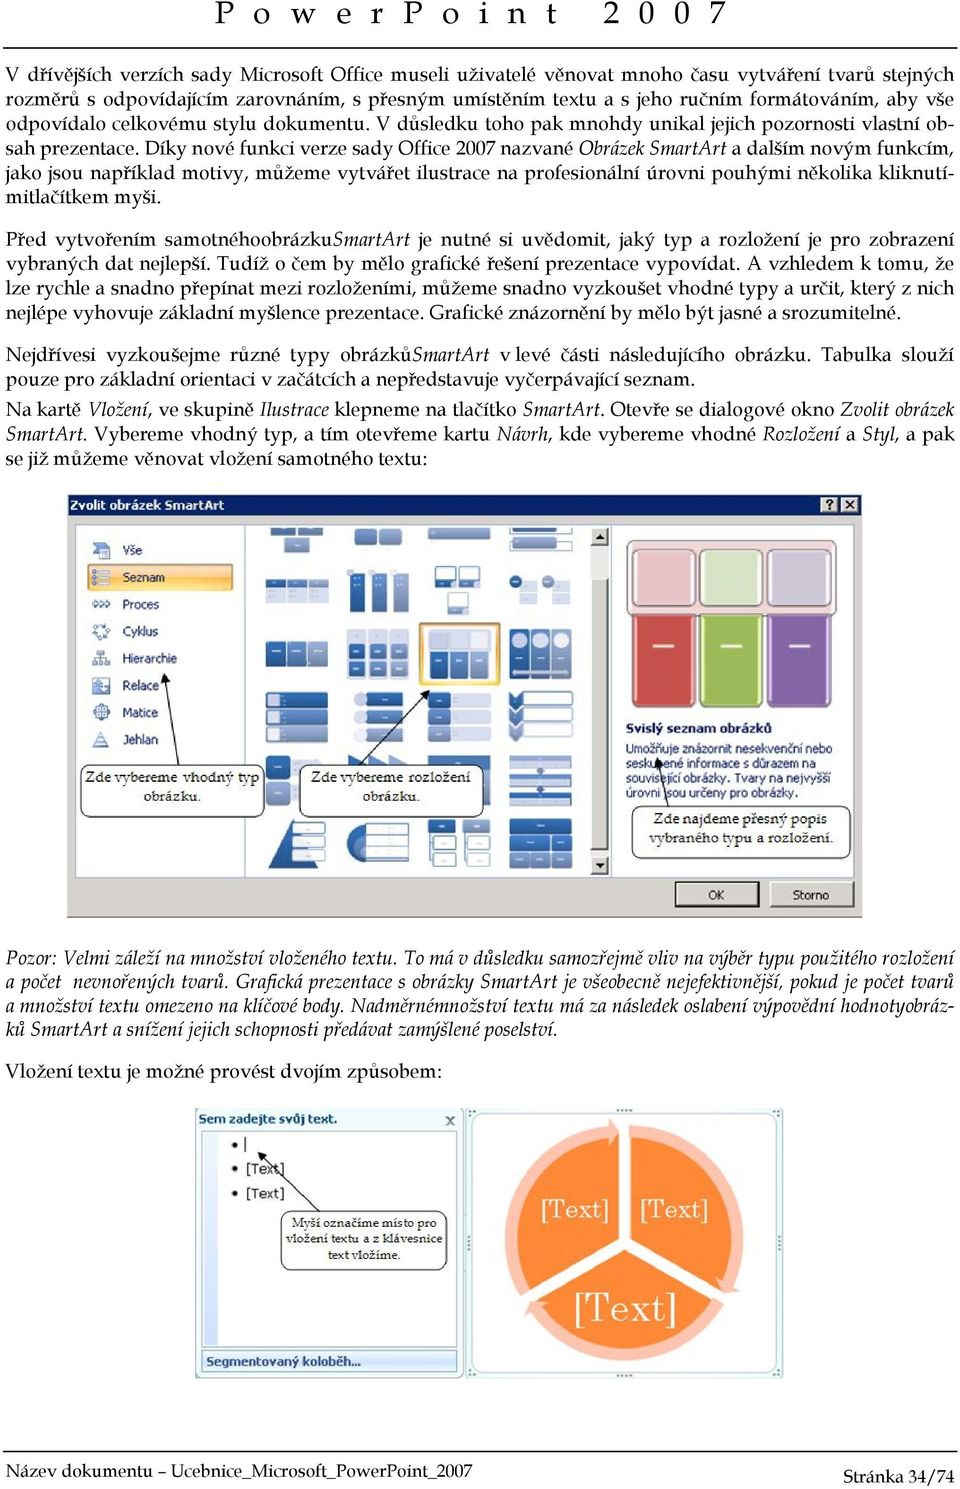 Díky nové funkci verze sady Office 2007 nazvané Obrázek SmartArt a dalším novým funkcím, jako jsou například motivy, můžeme vytvářet ilustrace na profesionální úrovni pouhými několika